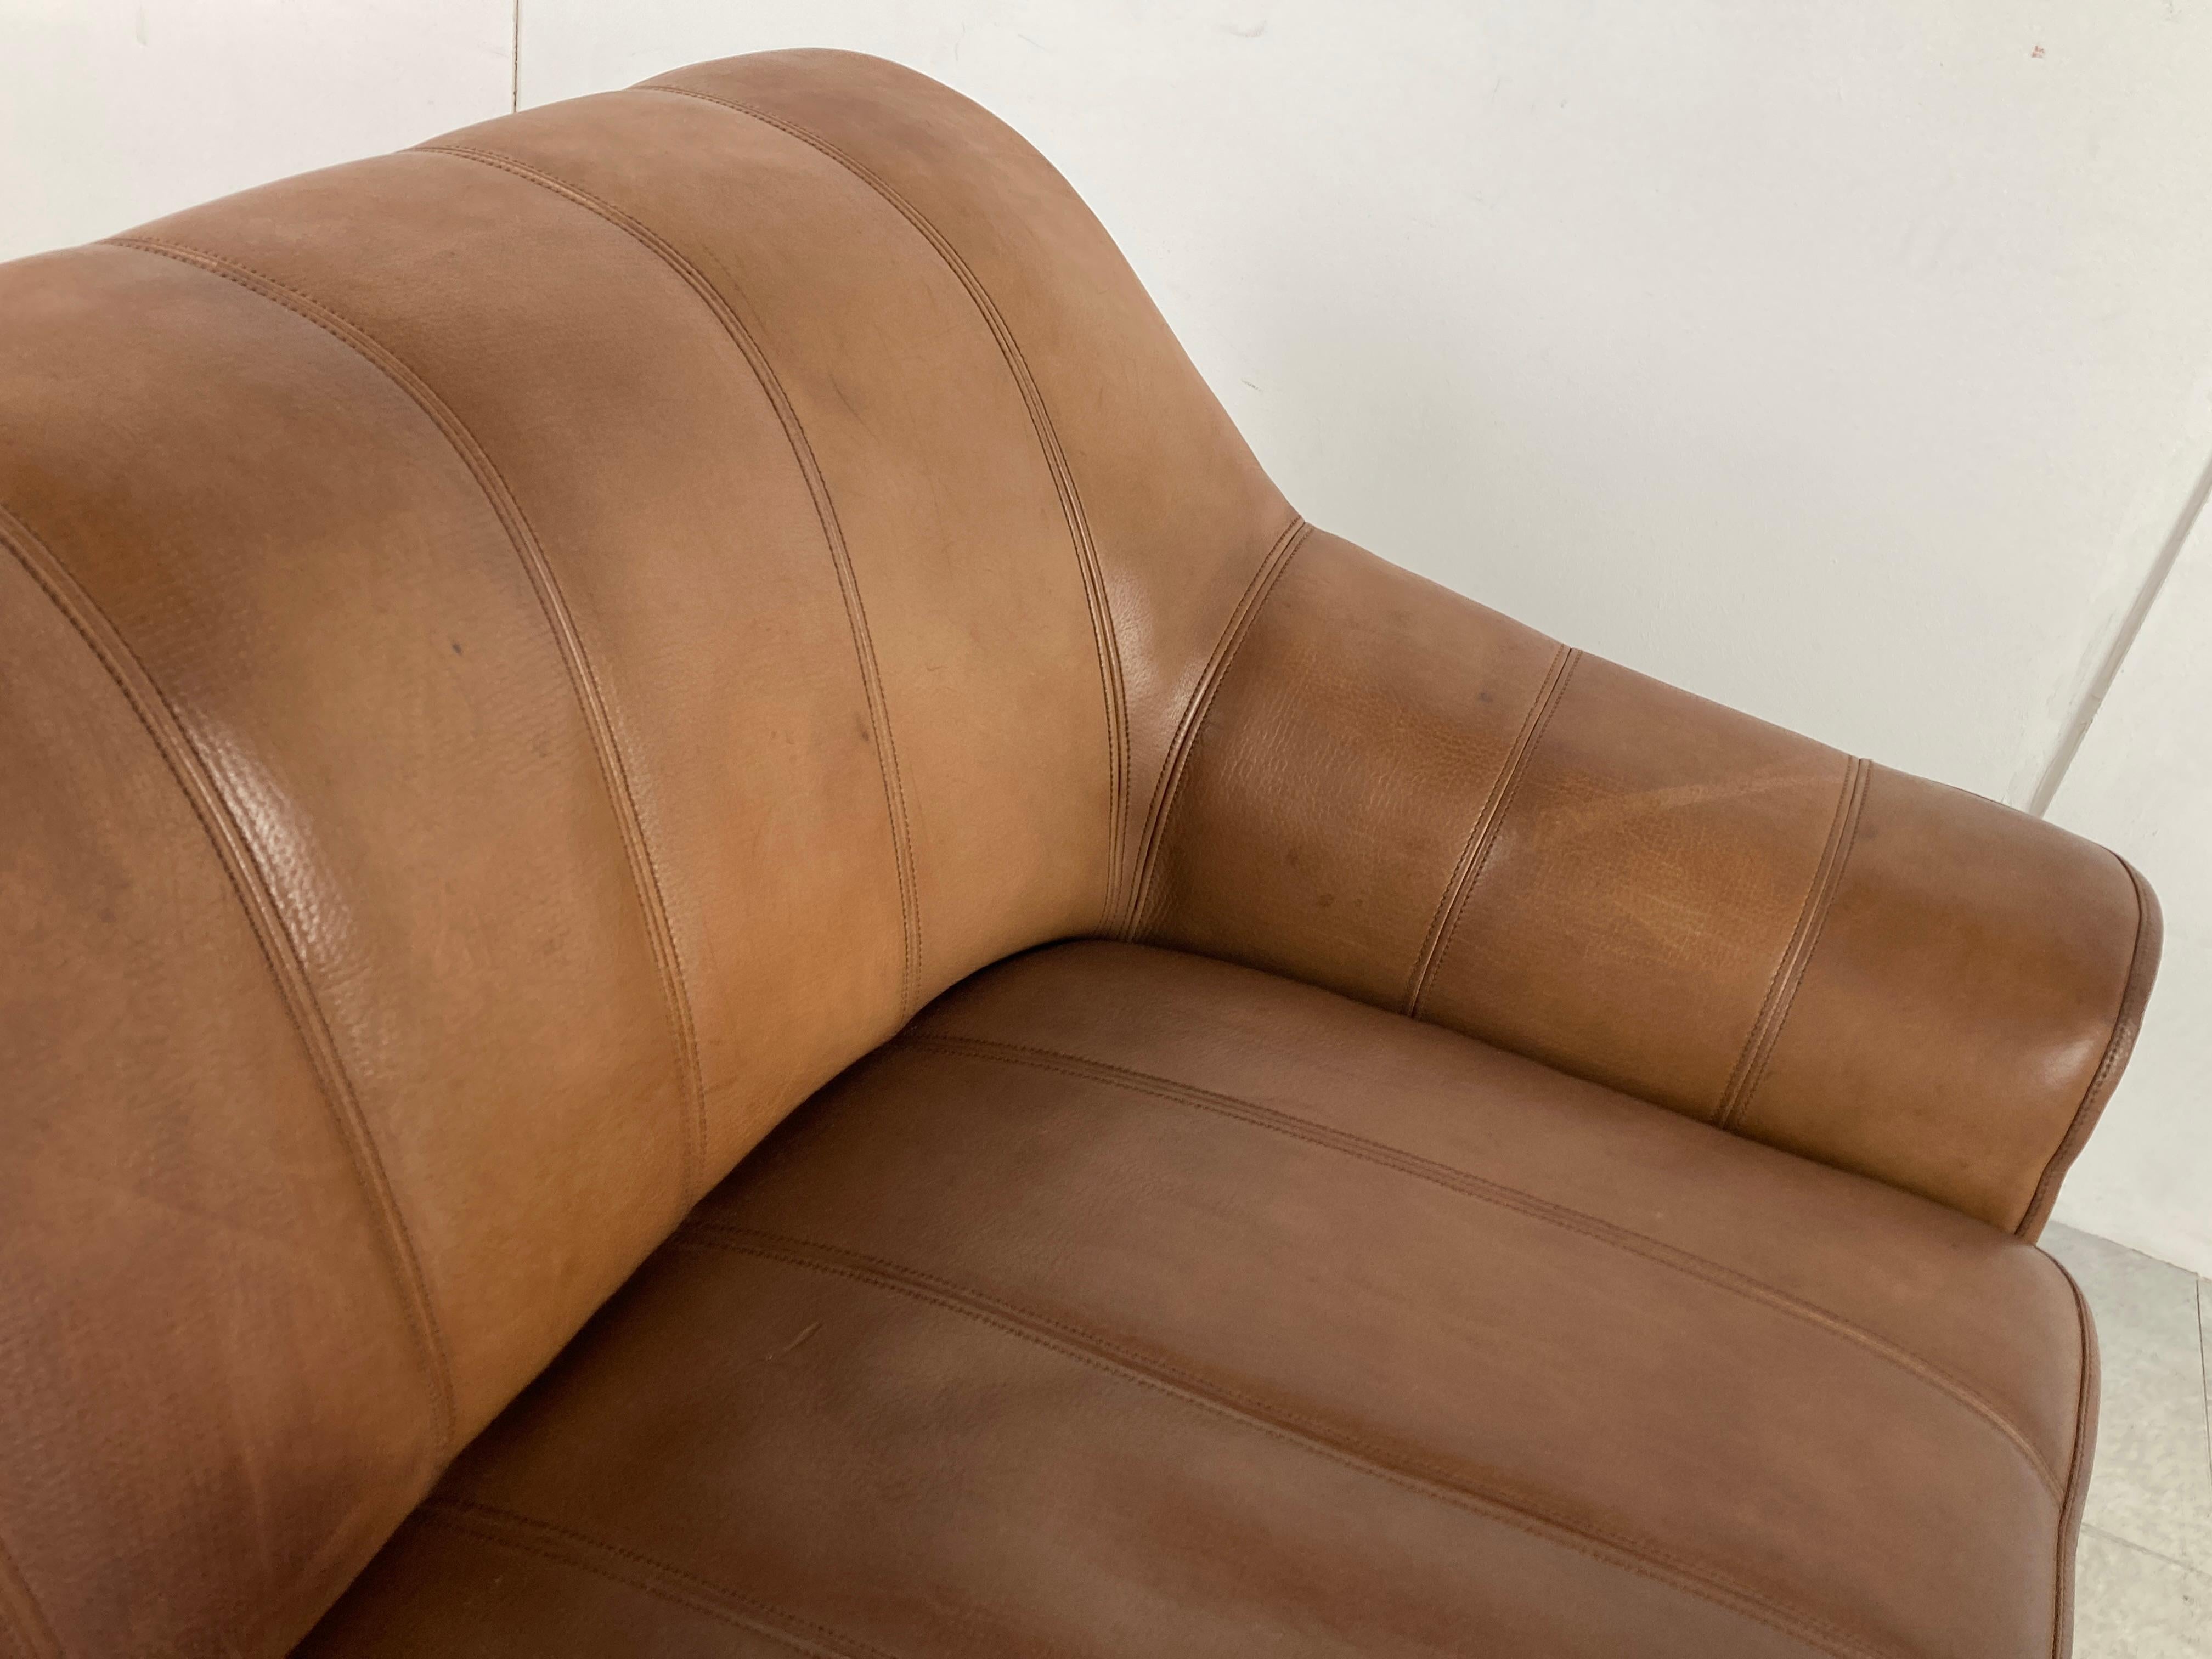 Magnifique canapé en cuir DS44 de De Sede.

De Sede, réputé pour utiliser des cuirs de la meilleure qualité, a créé de magnifiques canapés.

Celui-ci ne fait pas exception et est magnifiquement patiné au fil des ans, ce qui lui confère un charme